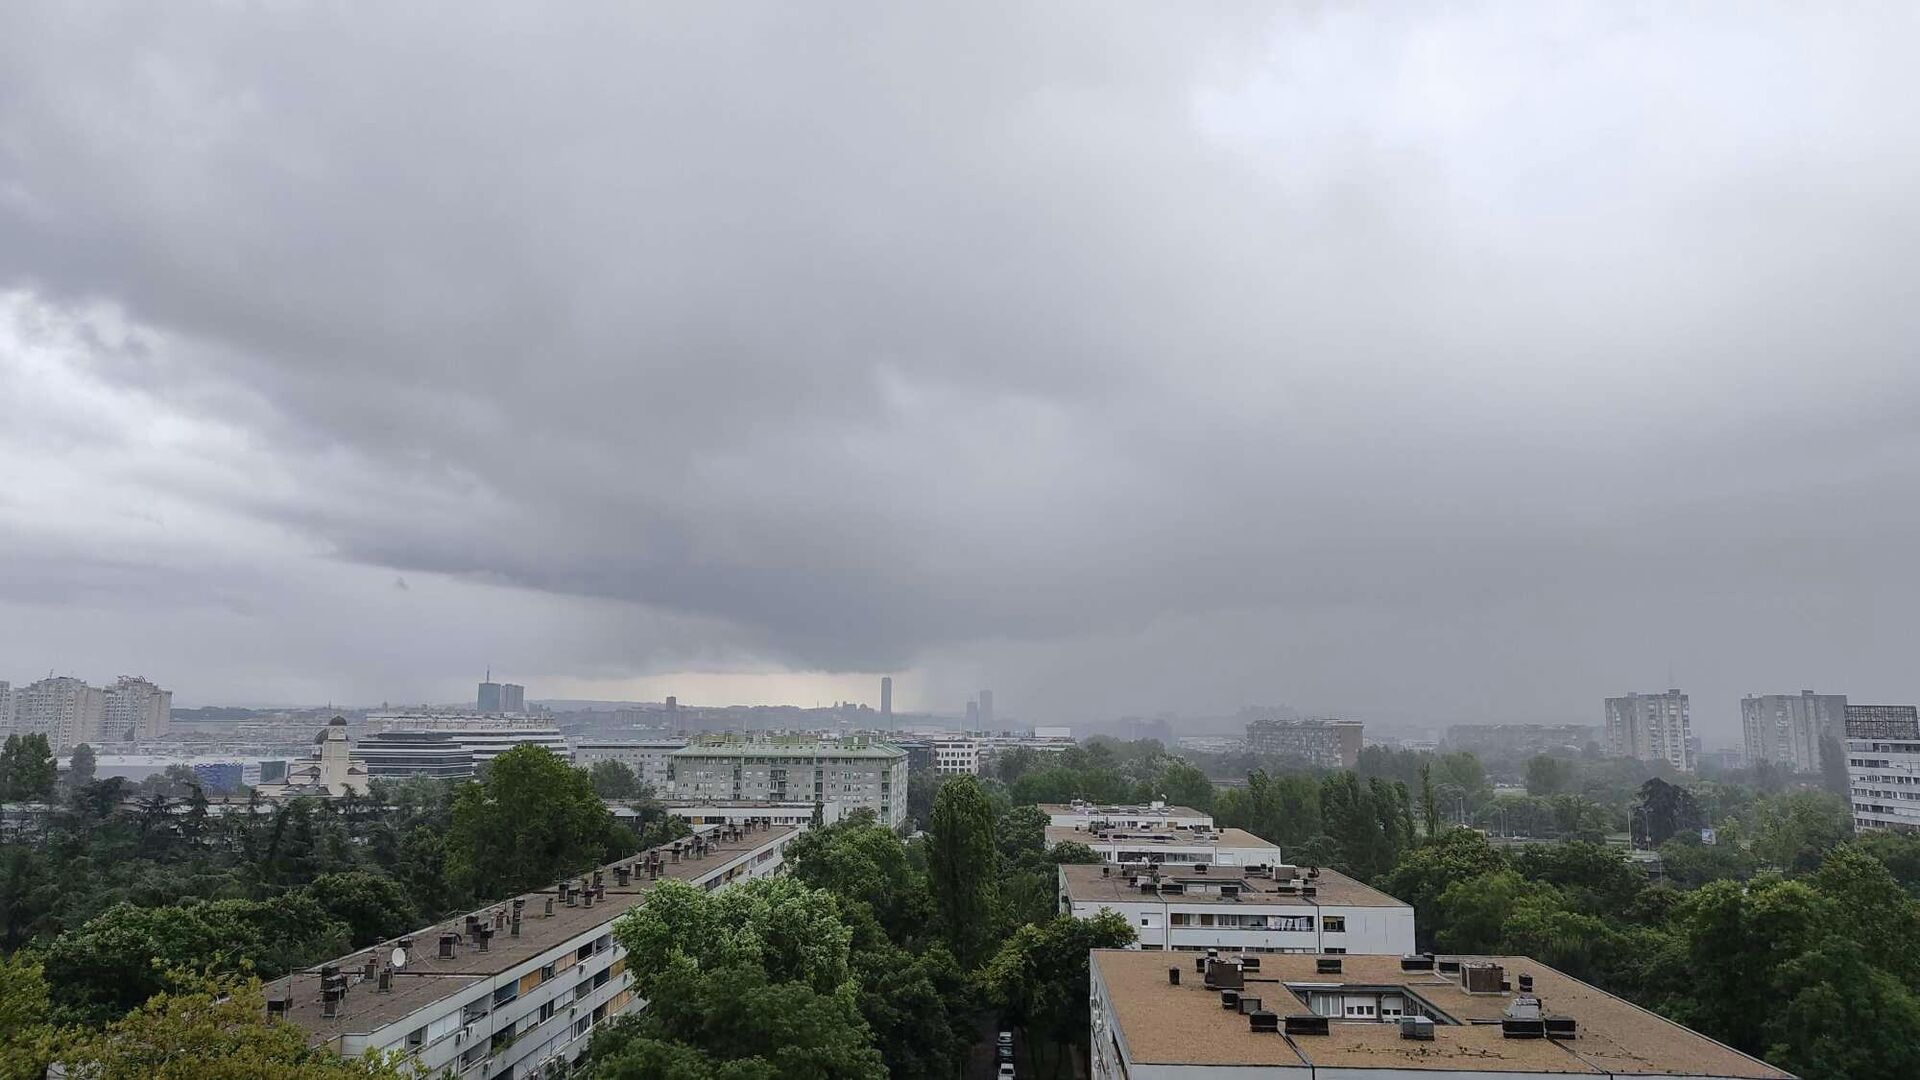  Сильный ливень в Белграде , больше городов под ударом: Следите за движением облачной системы над Сербией /photo/